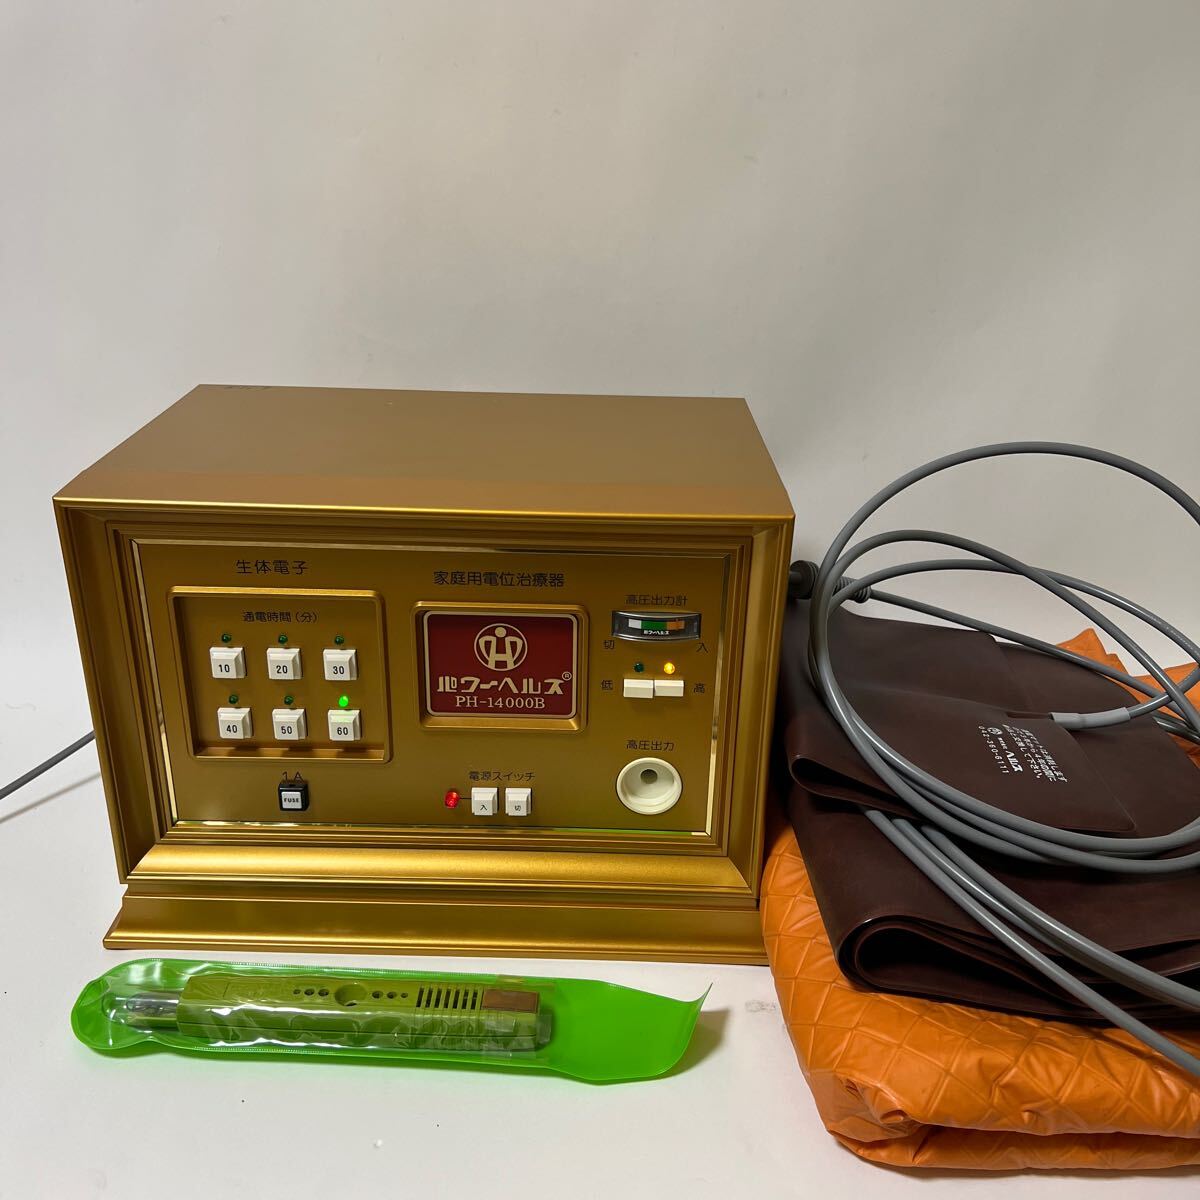 パワーヘルス PH-14000B 家庭用電位治療器 マット 付属品 通電OK の画像1